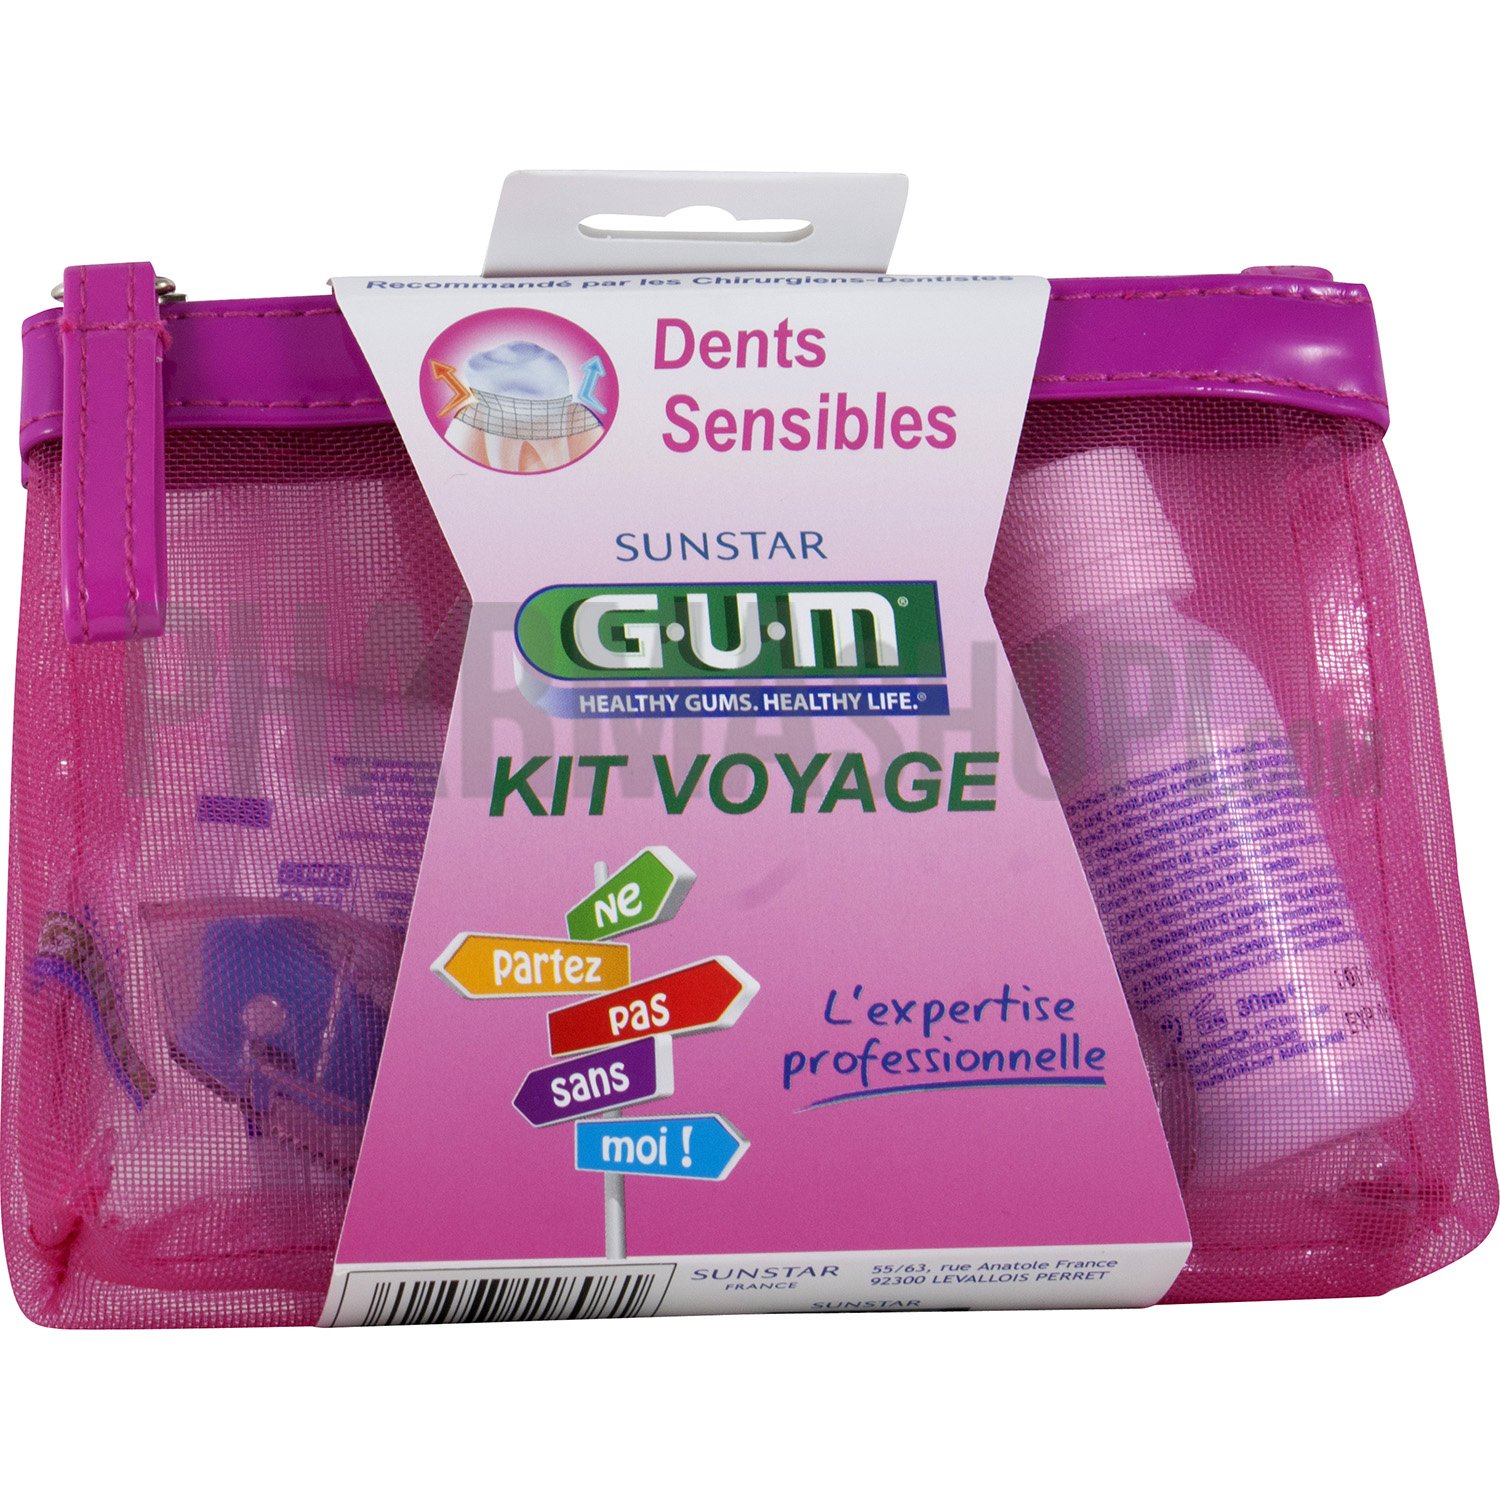 Kit de voyage dents sensibles Gum - 1 kit voyage